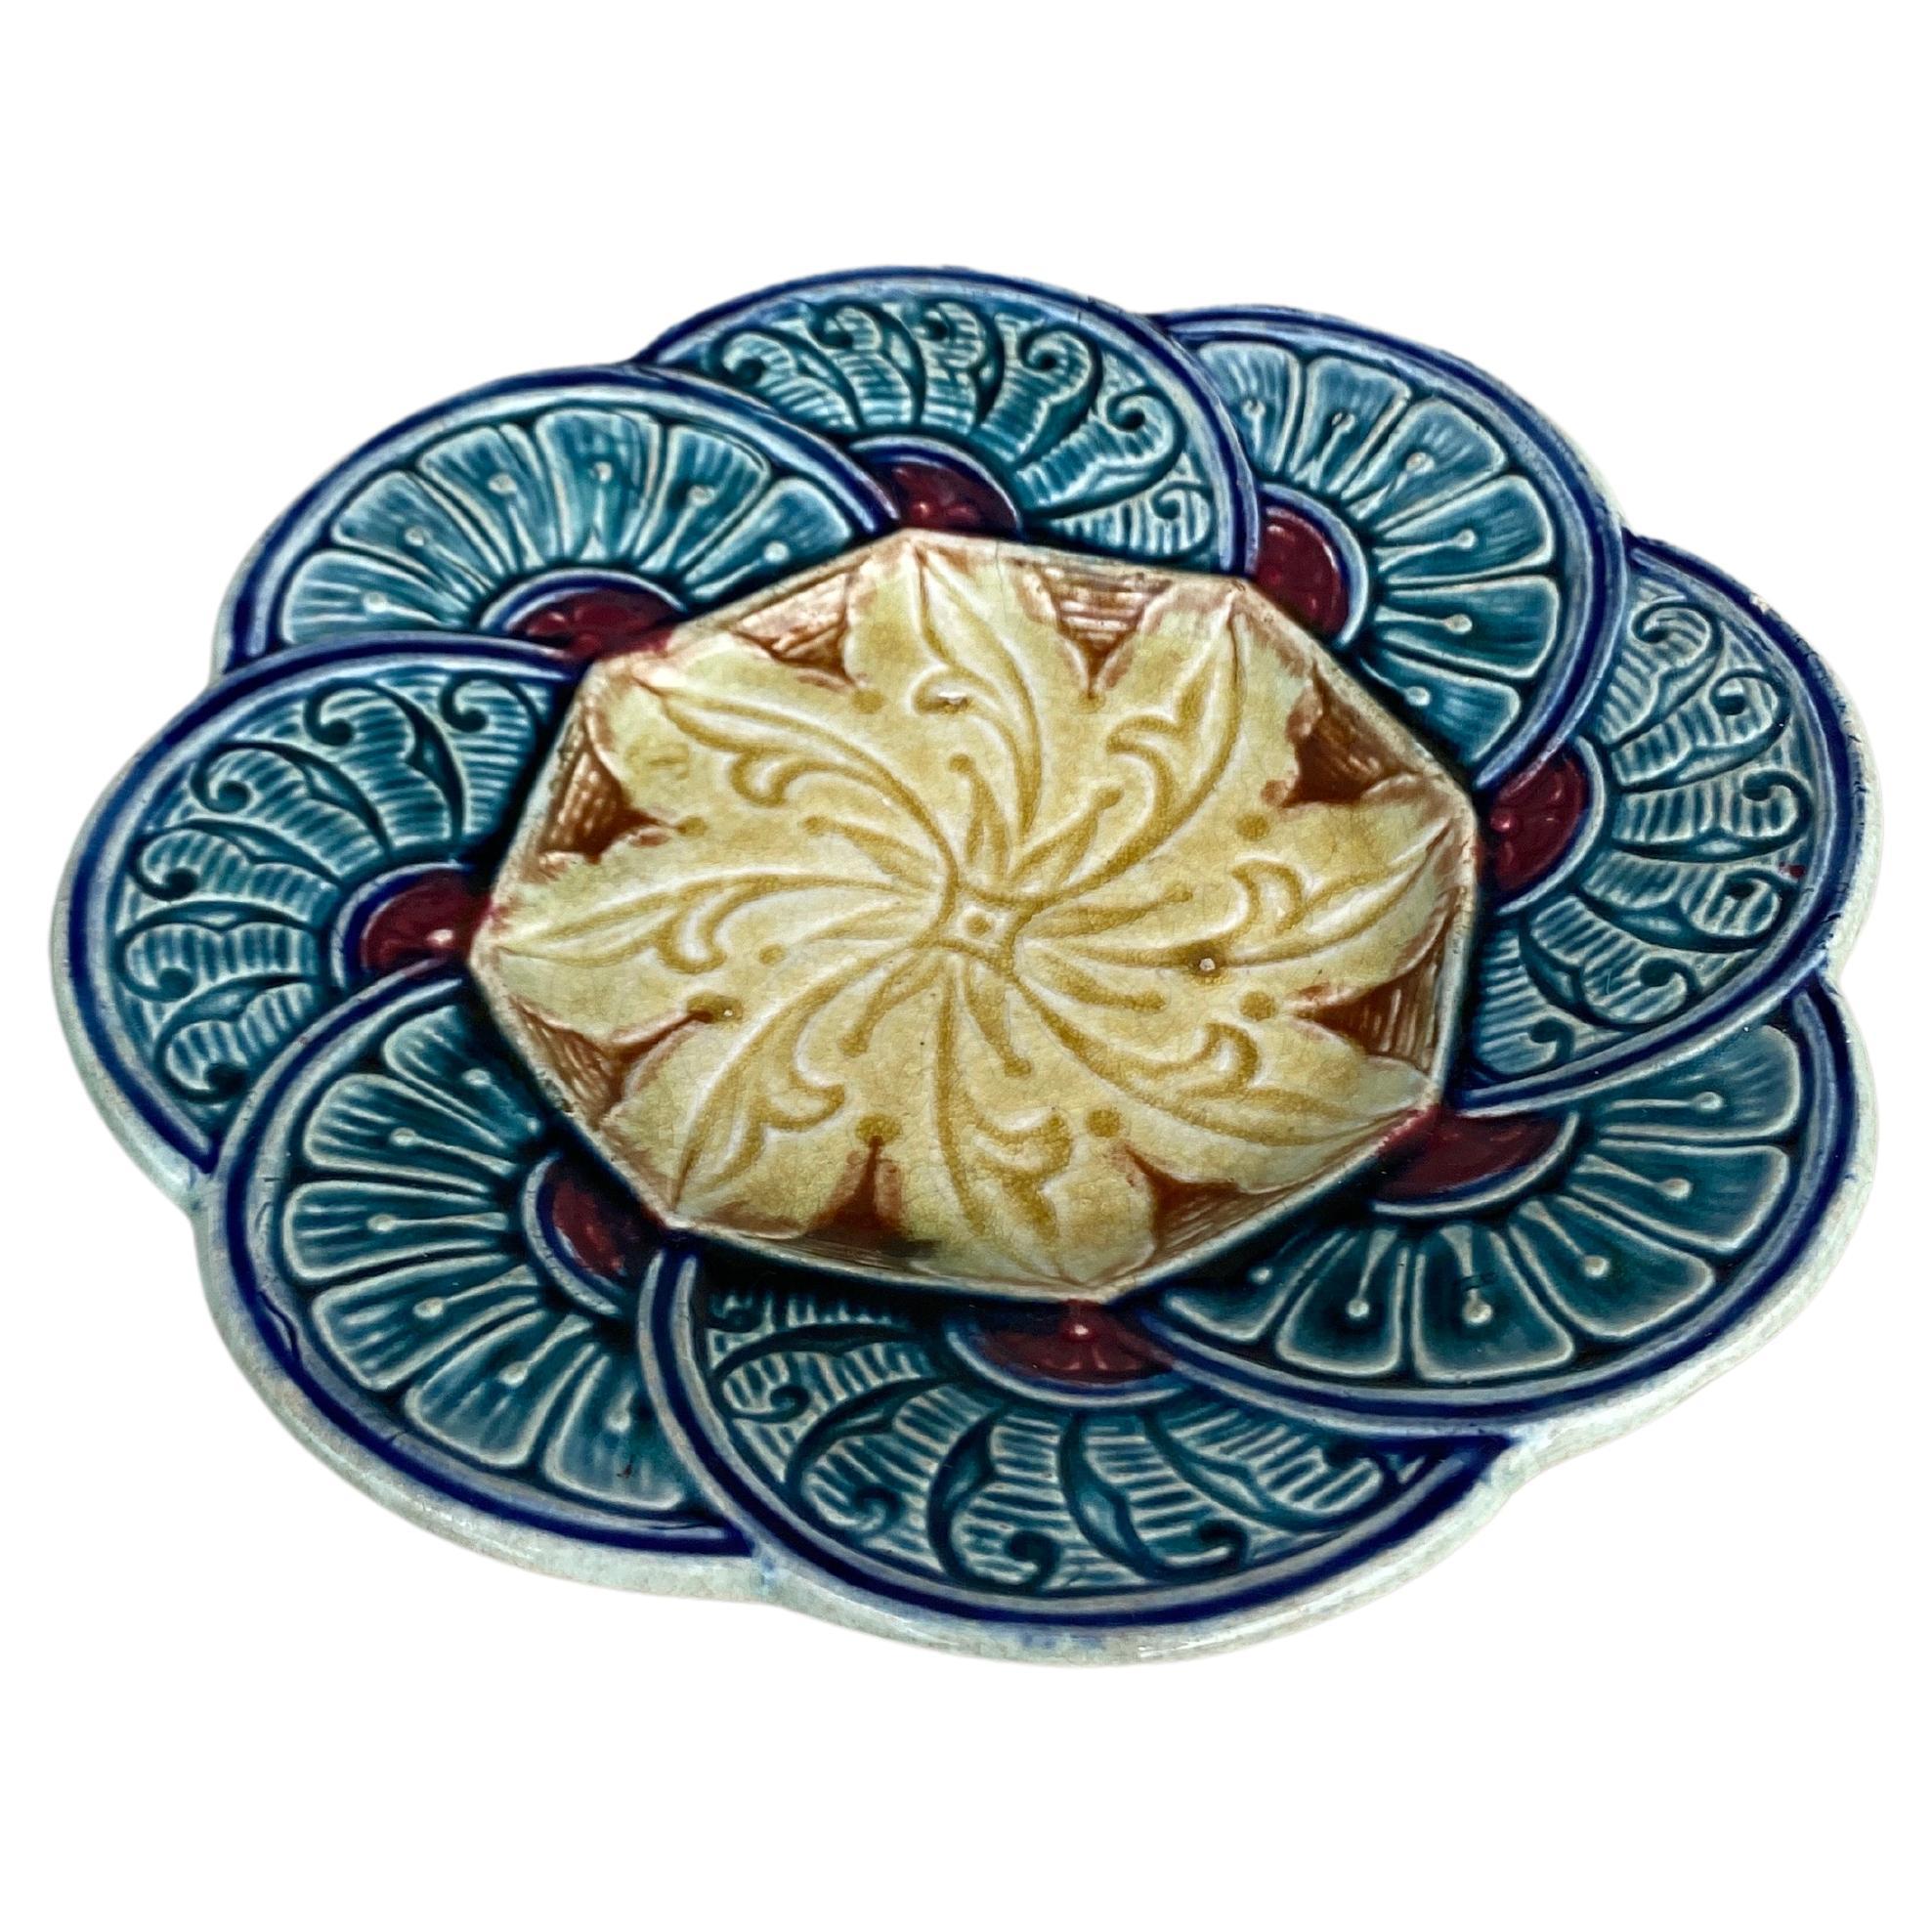 Petite assiette à fleurs en majolique belge Wasmuel, vers 1880.
Motif géométrique.
  